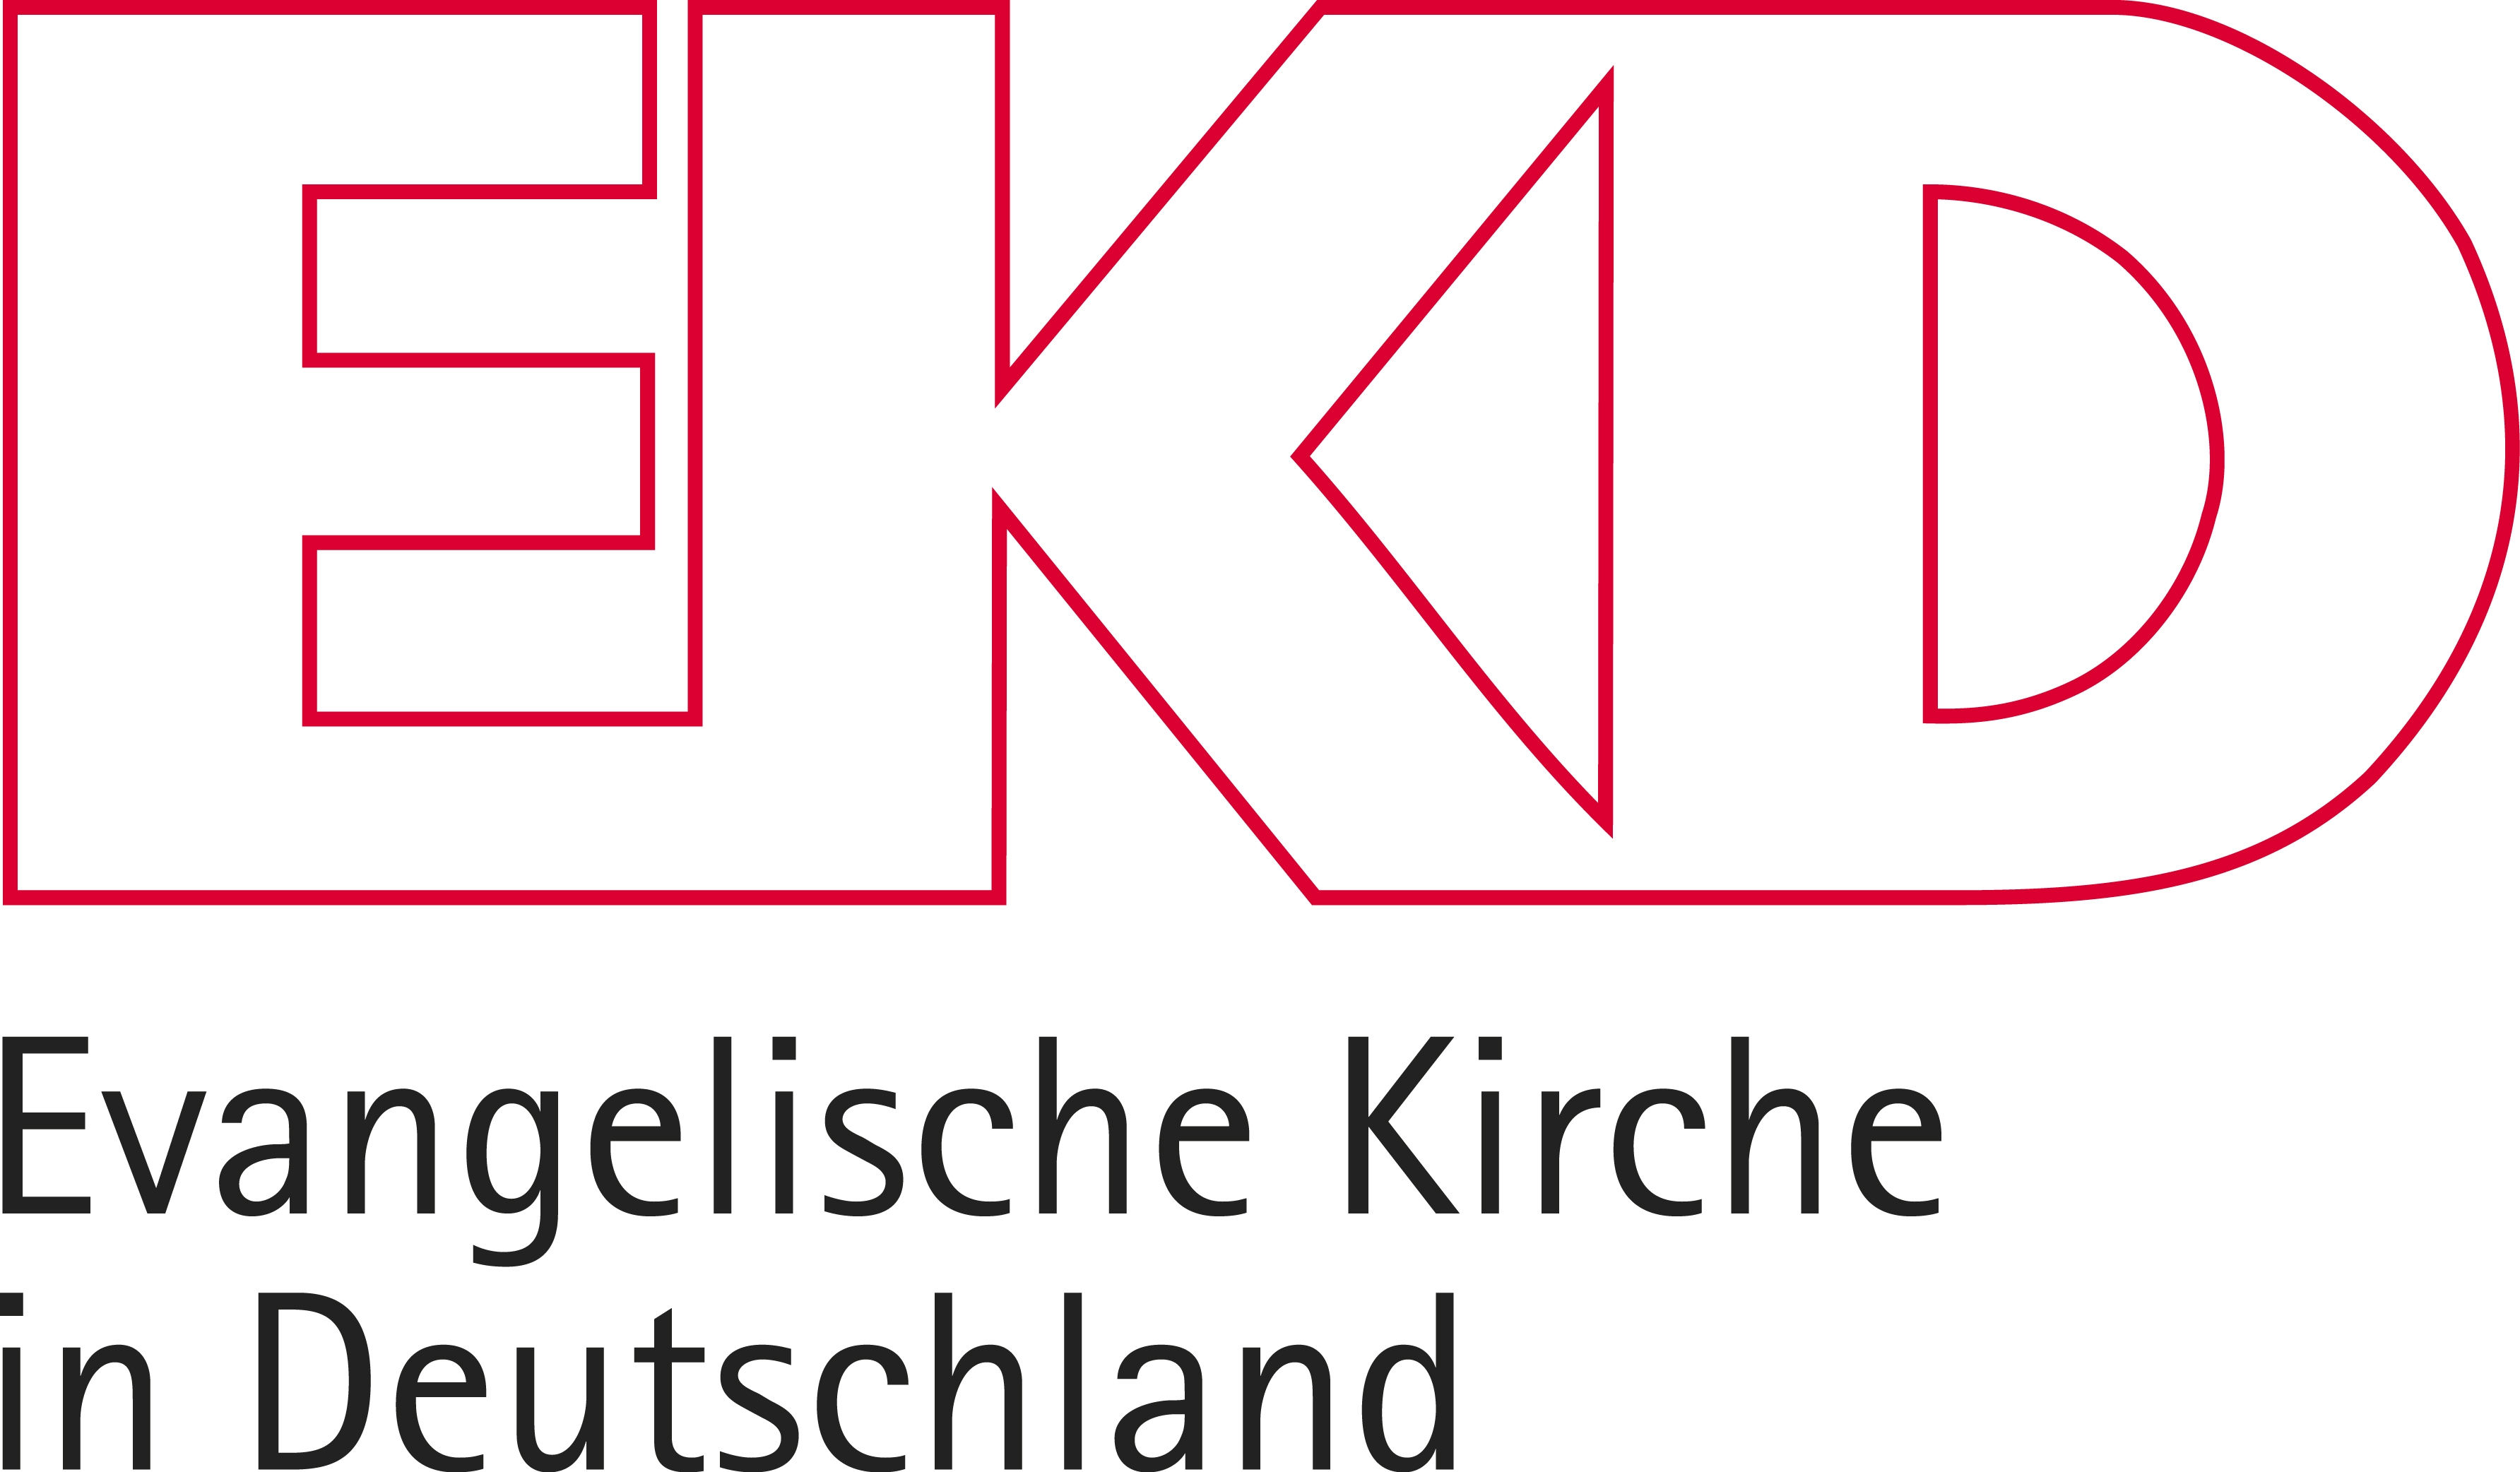 EKD-Logo